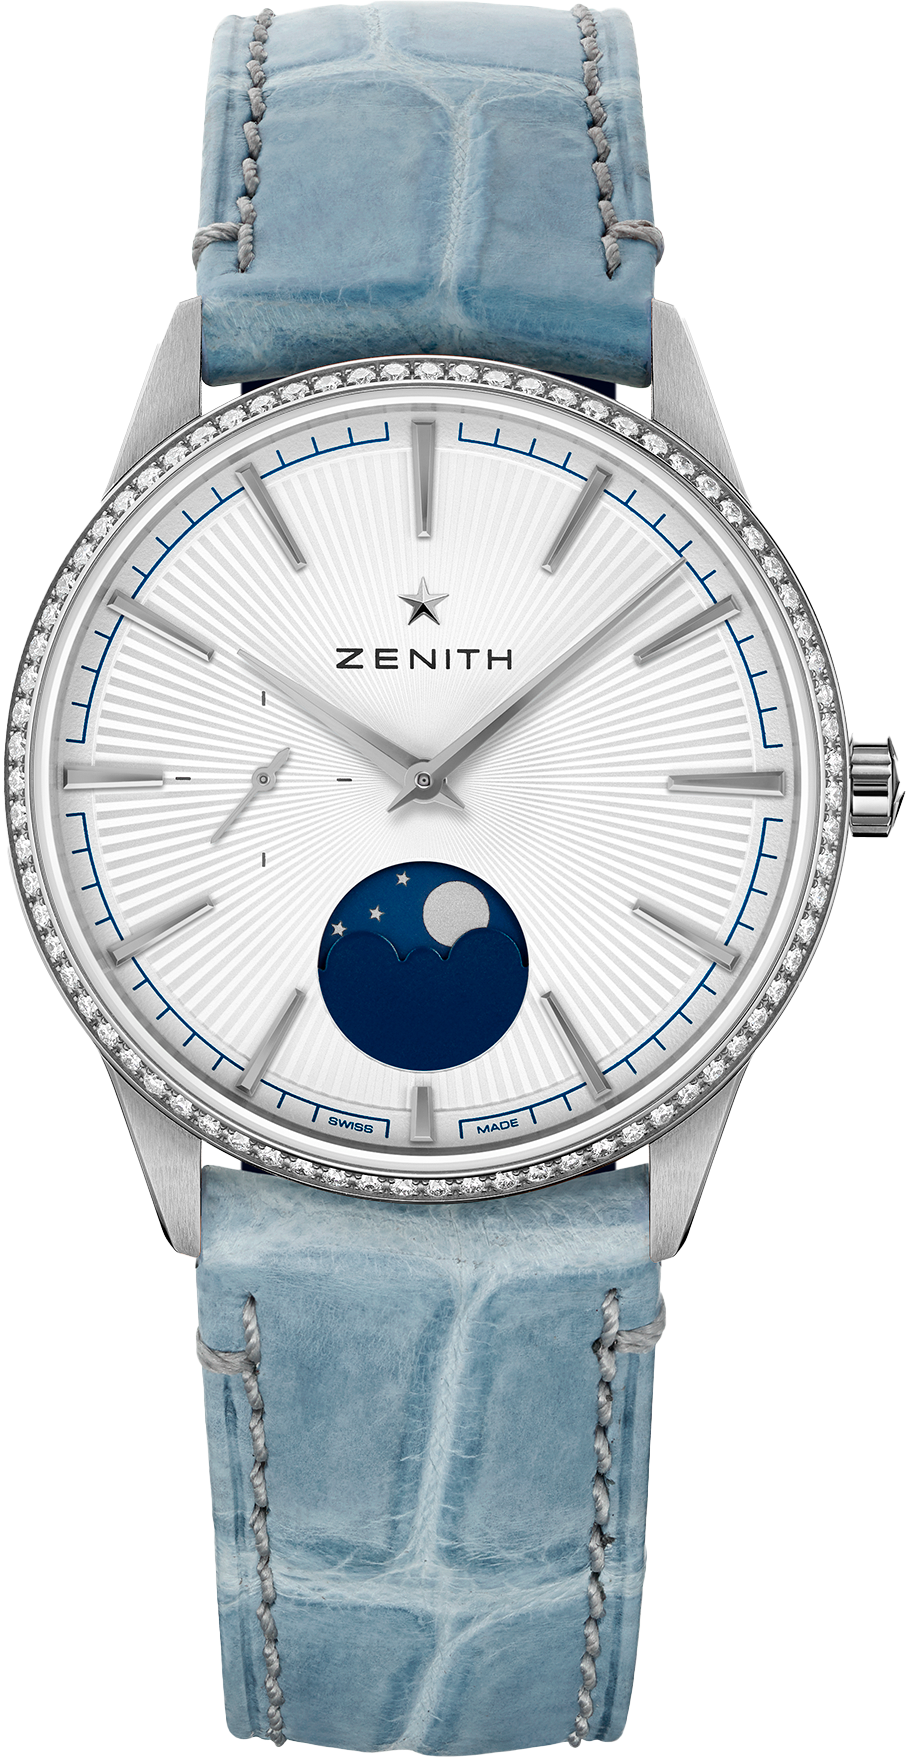 Zenith 16.3200.692/01.C832 (16320069201c832) - Elite Moonphase